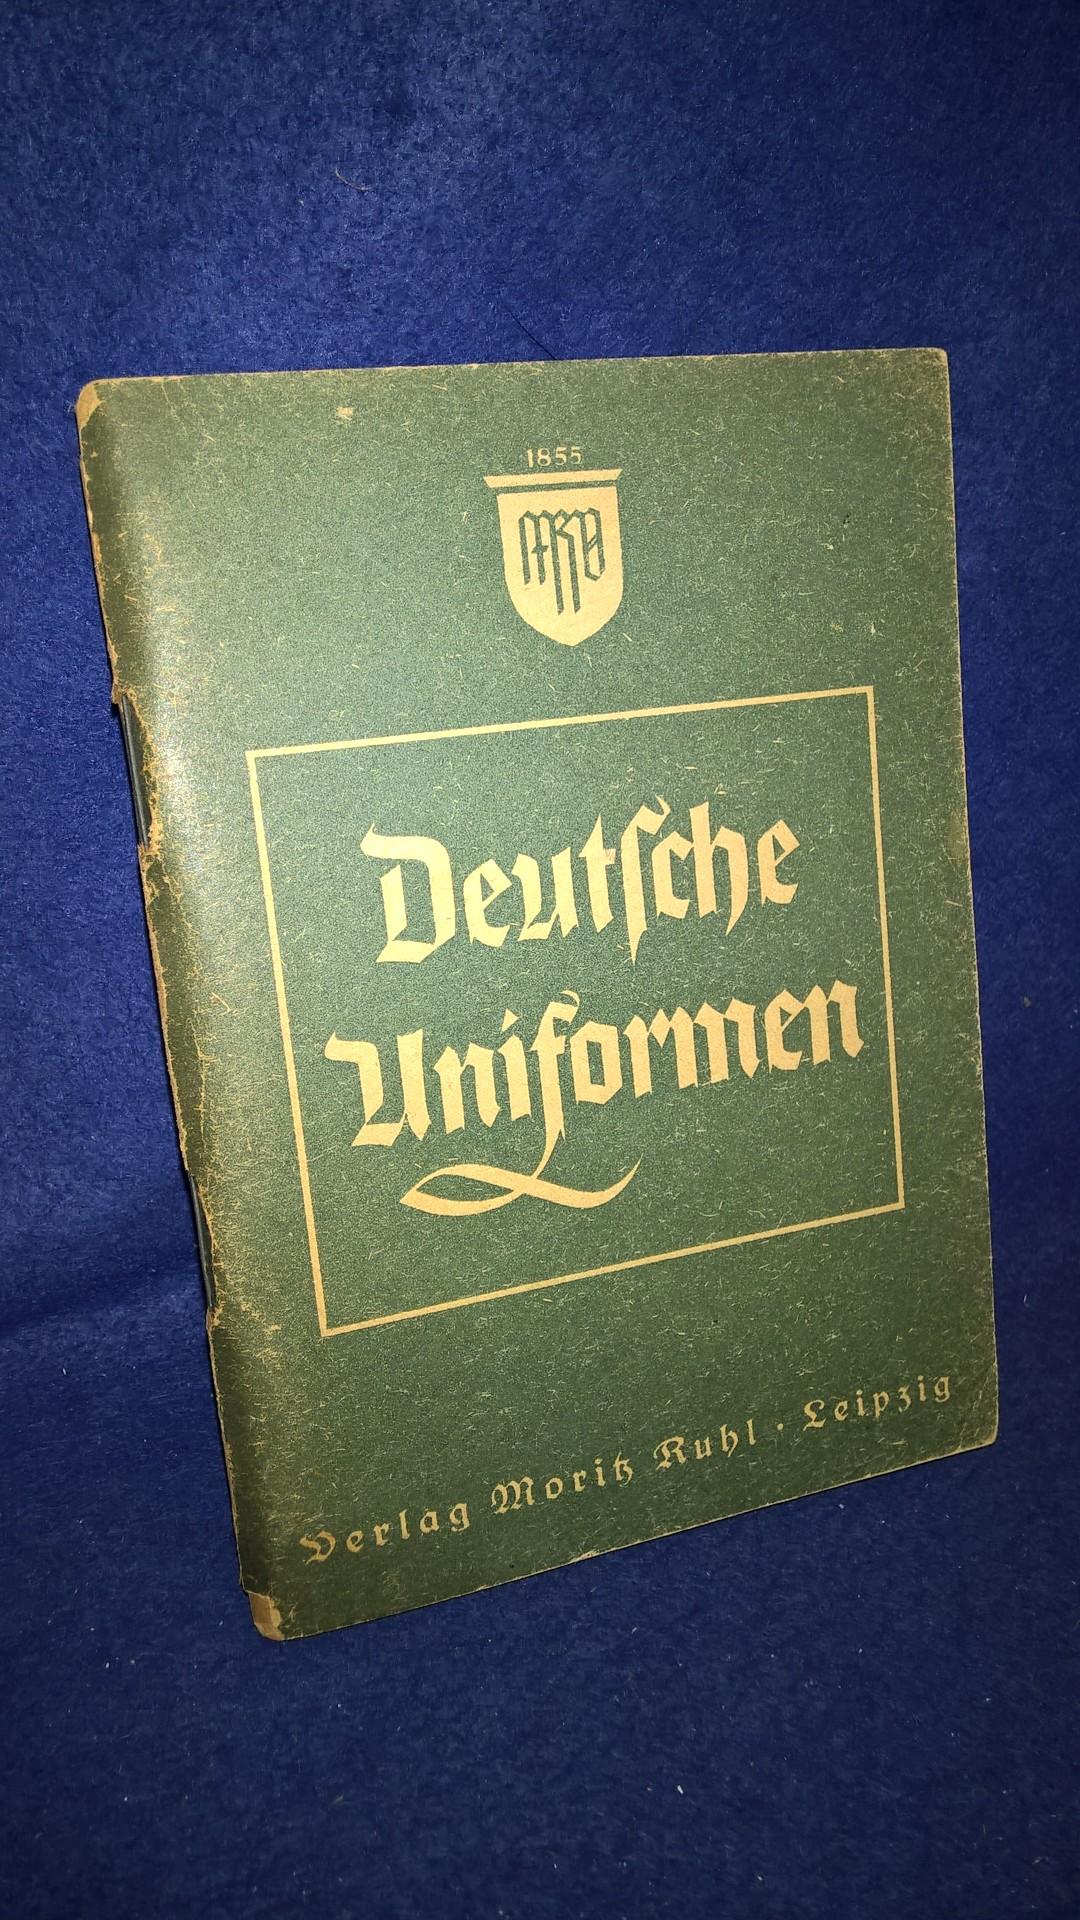 Deutsche Uniformen Heer - Kriegsmarine - Luftwaffe RAD - Deutsches Rotes Kreuz - Deutsche Polizei - Zollgrenzschutz - Zoll - PL - SS - SA - NSKK - NSFK - RLB - HJ - DJ. 100% Orginal!!